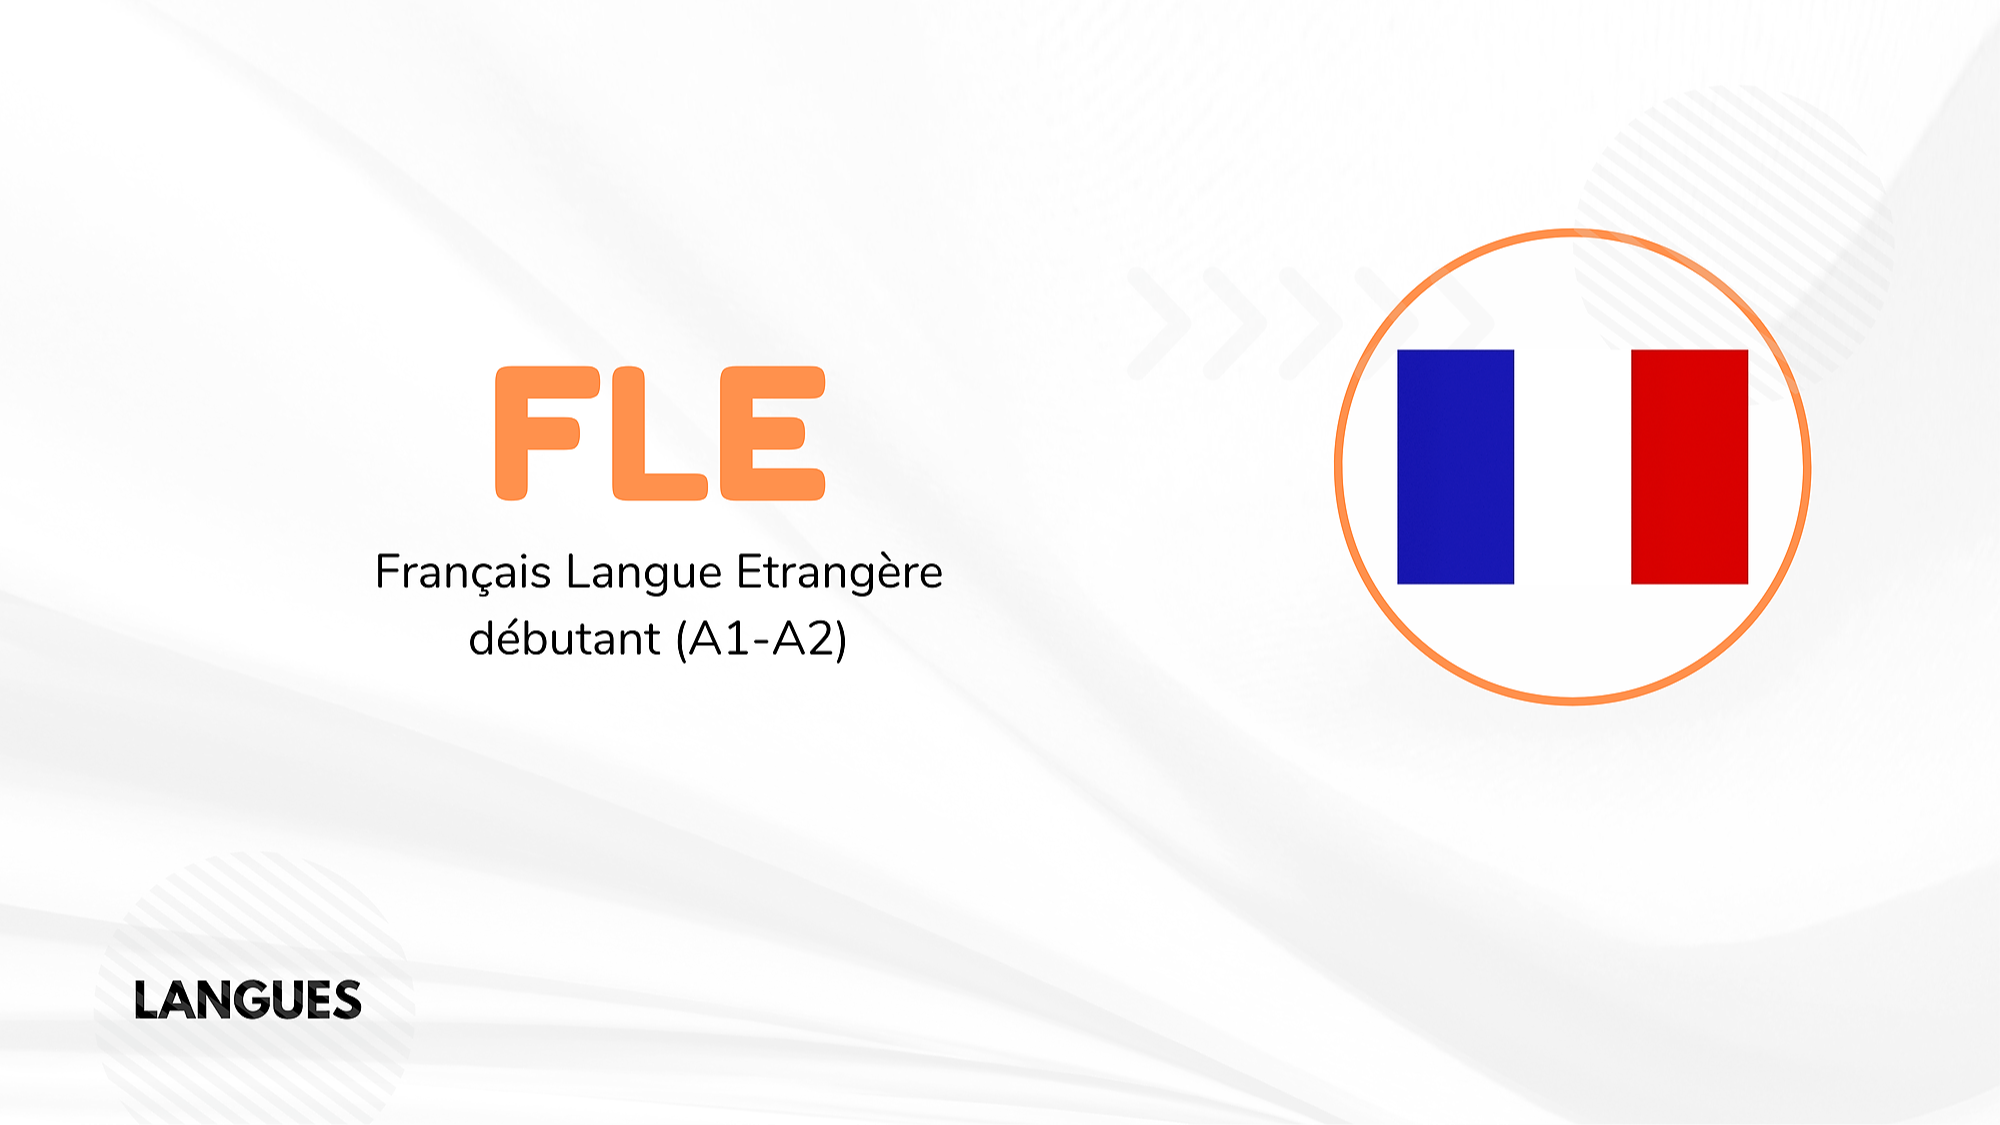 Représentation de la formation : FRANCAIS LANGUE ETRANGERE (FLE) NIVEAU A1-A2